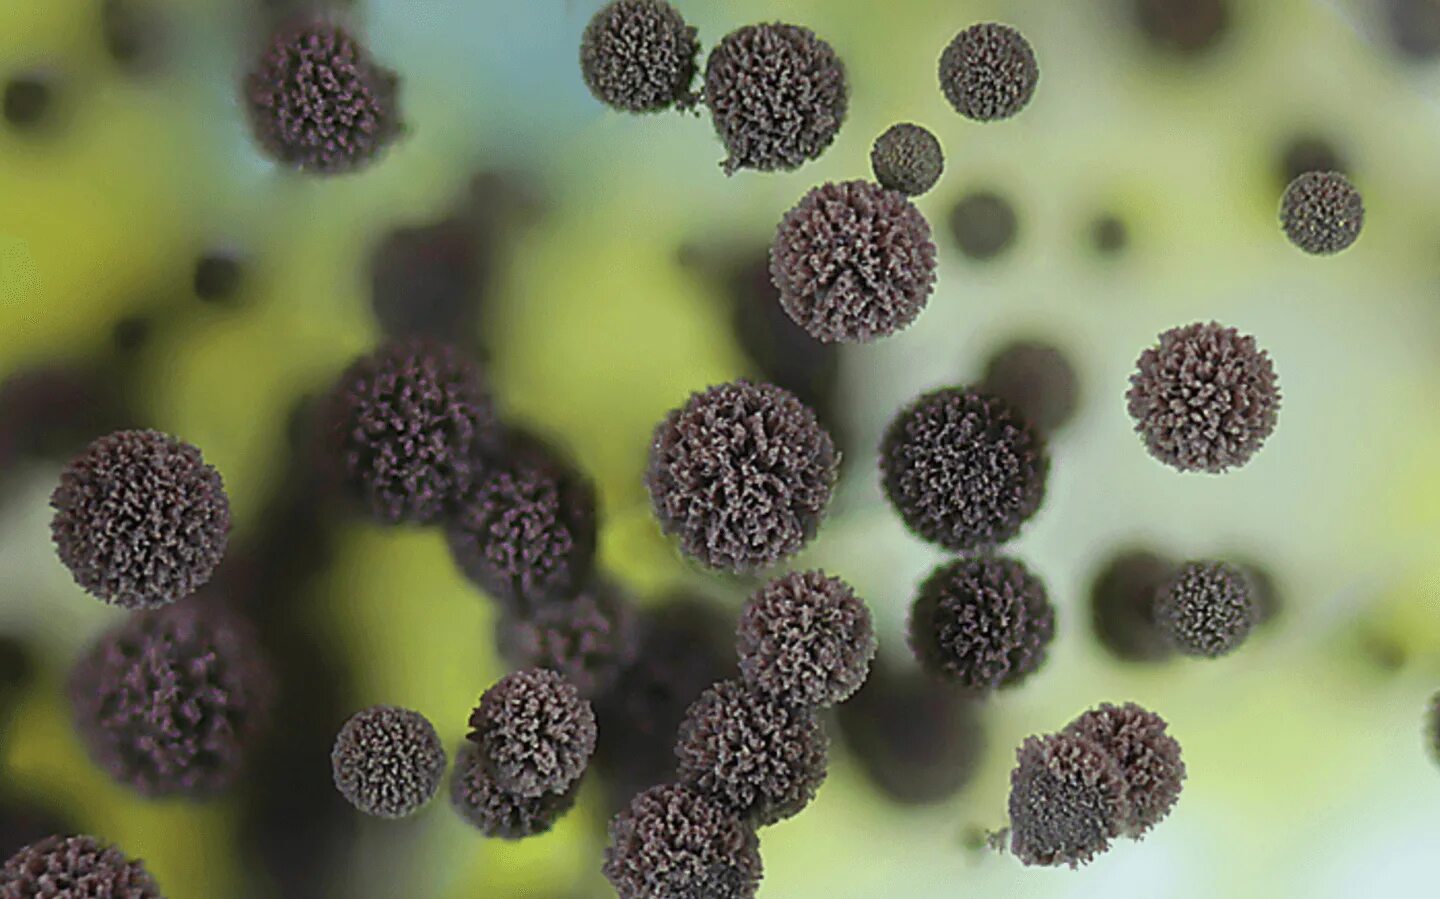 Споры грибов семена. Грибок аспергиллус нигер. Черная плесень (Aspergillus Niger). Aspergillus Niger (аспергилл черный). Aspergillus Niger под микроскопом.